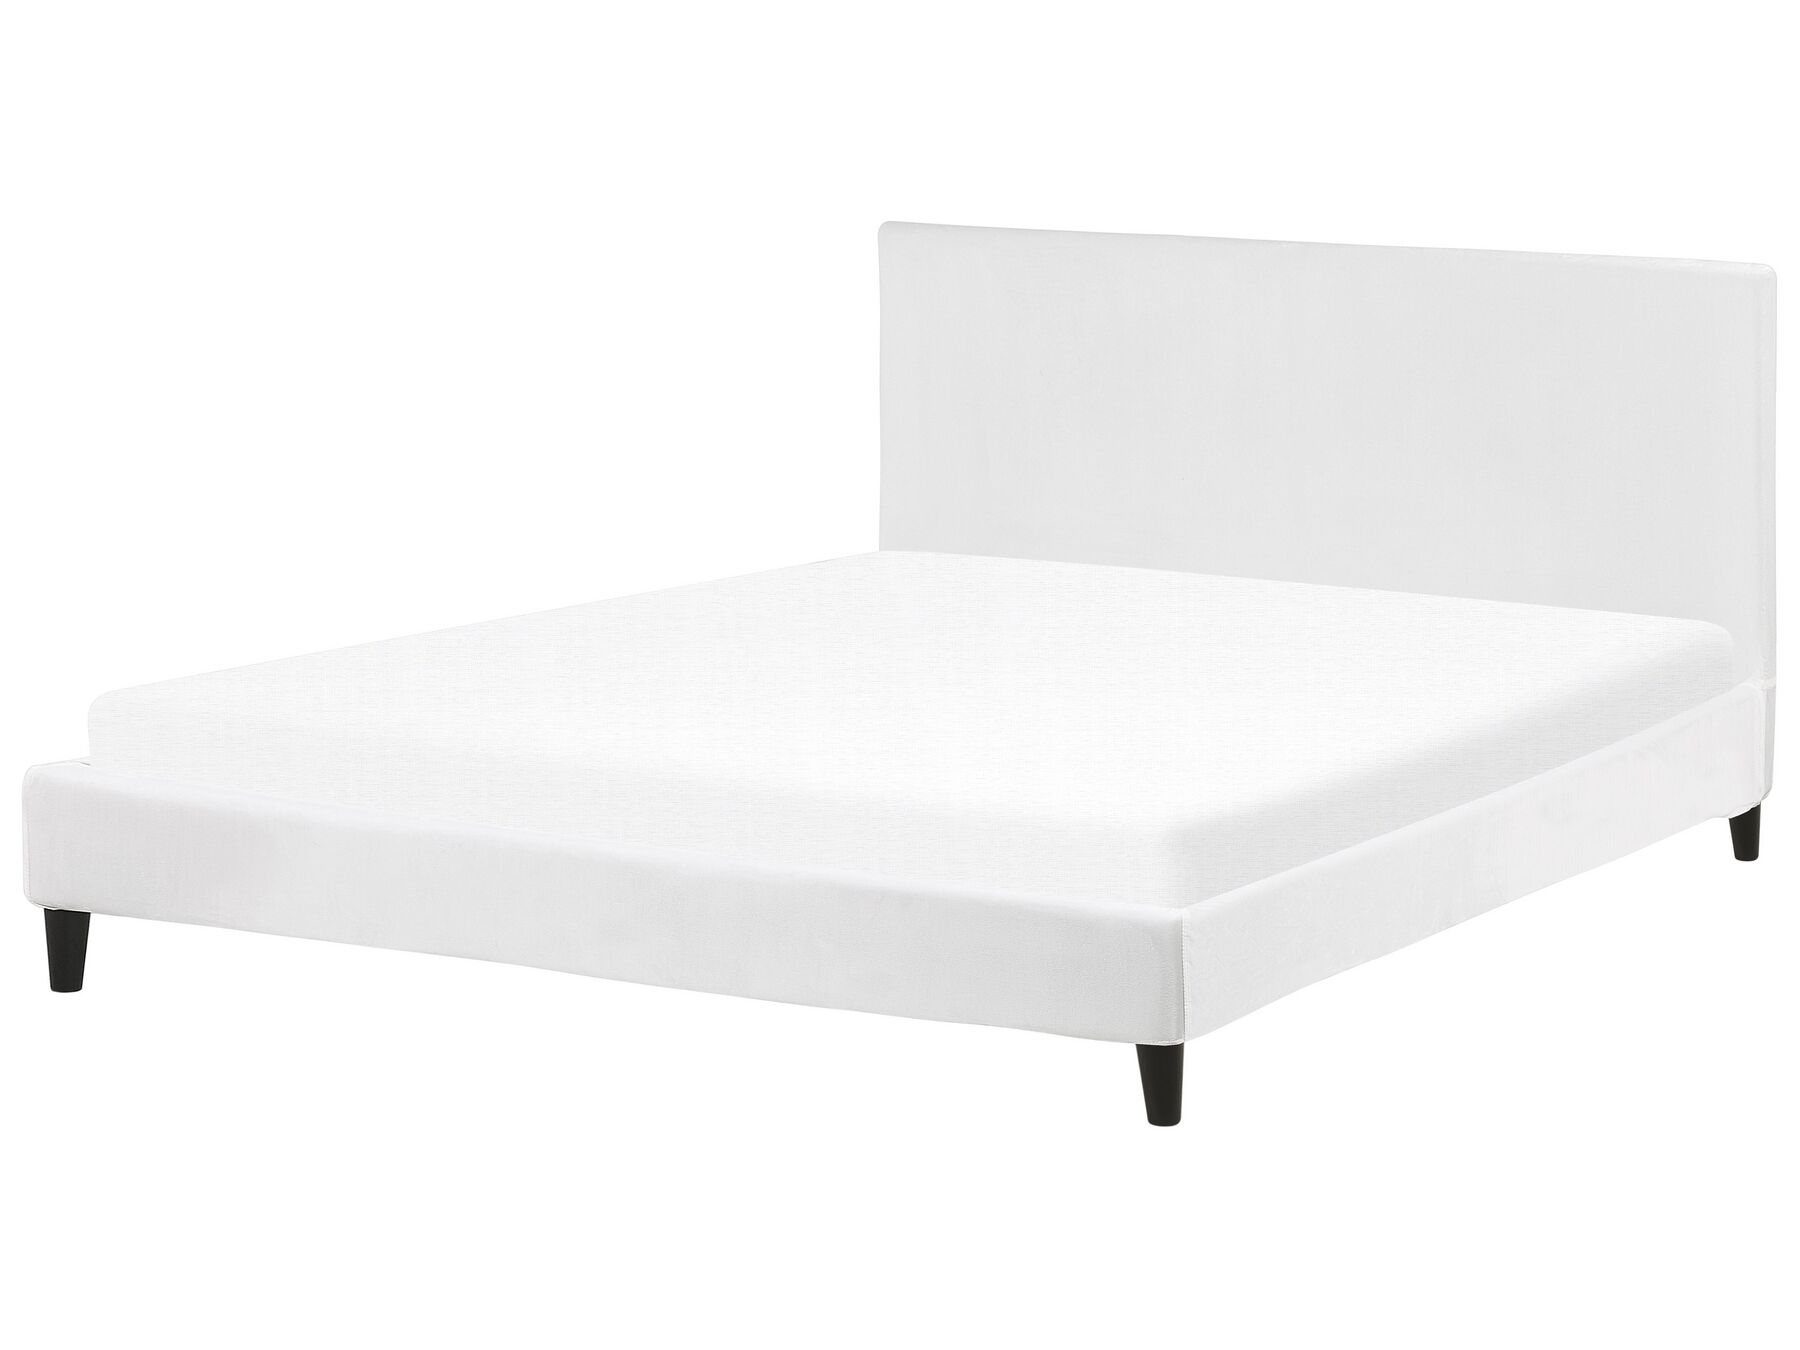  Čalouněná sametová postel bíla 180 x 200 cm FITOU _777120